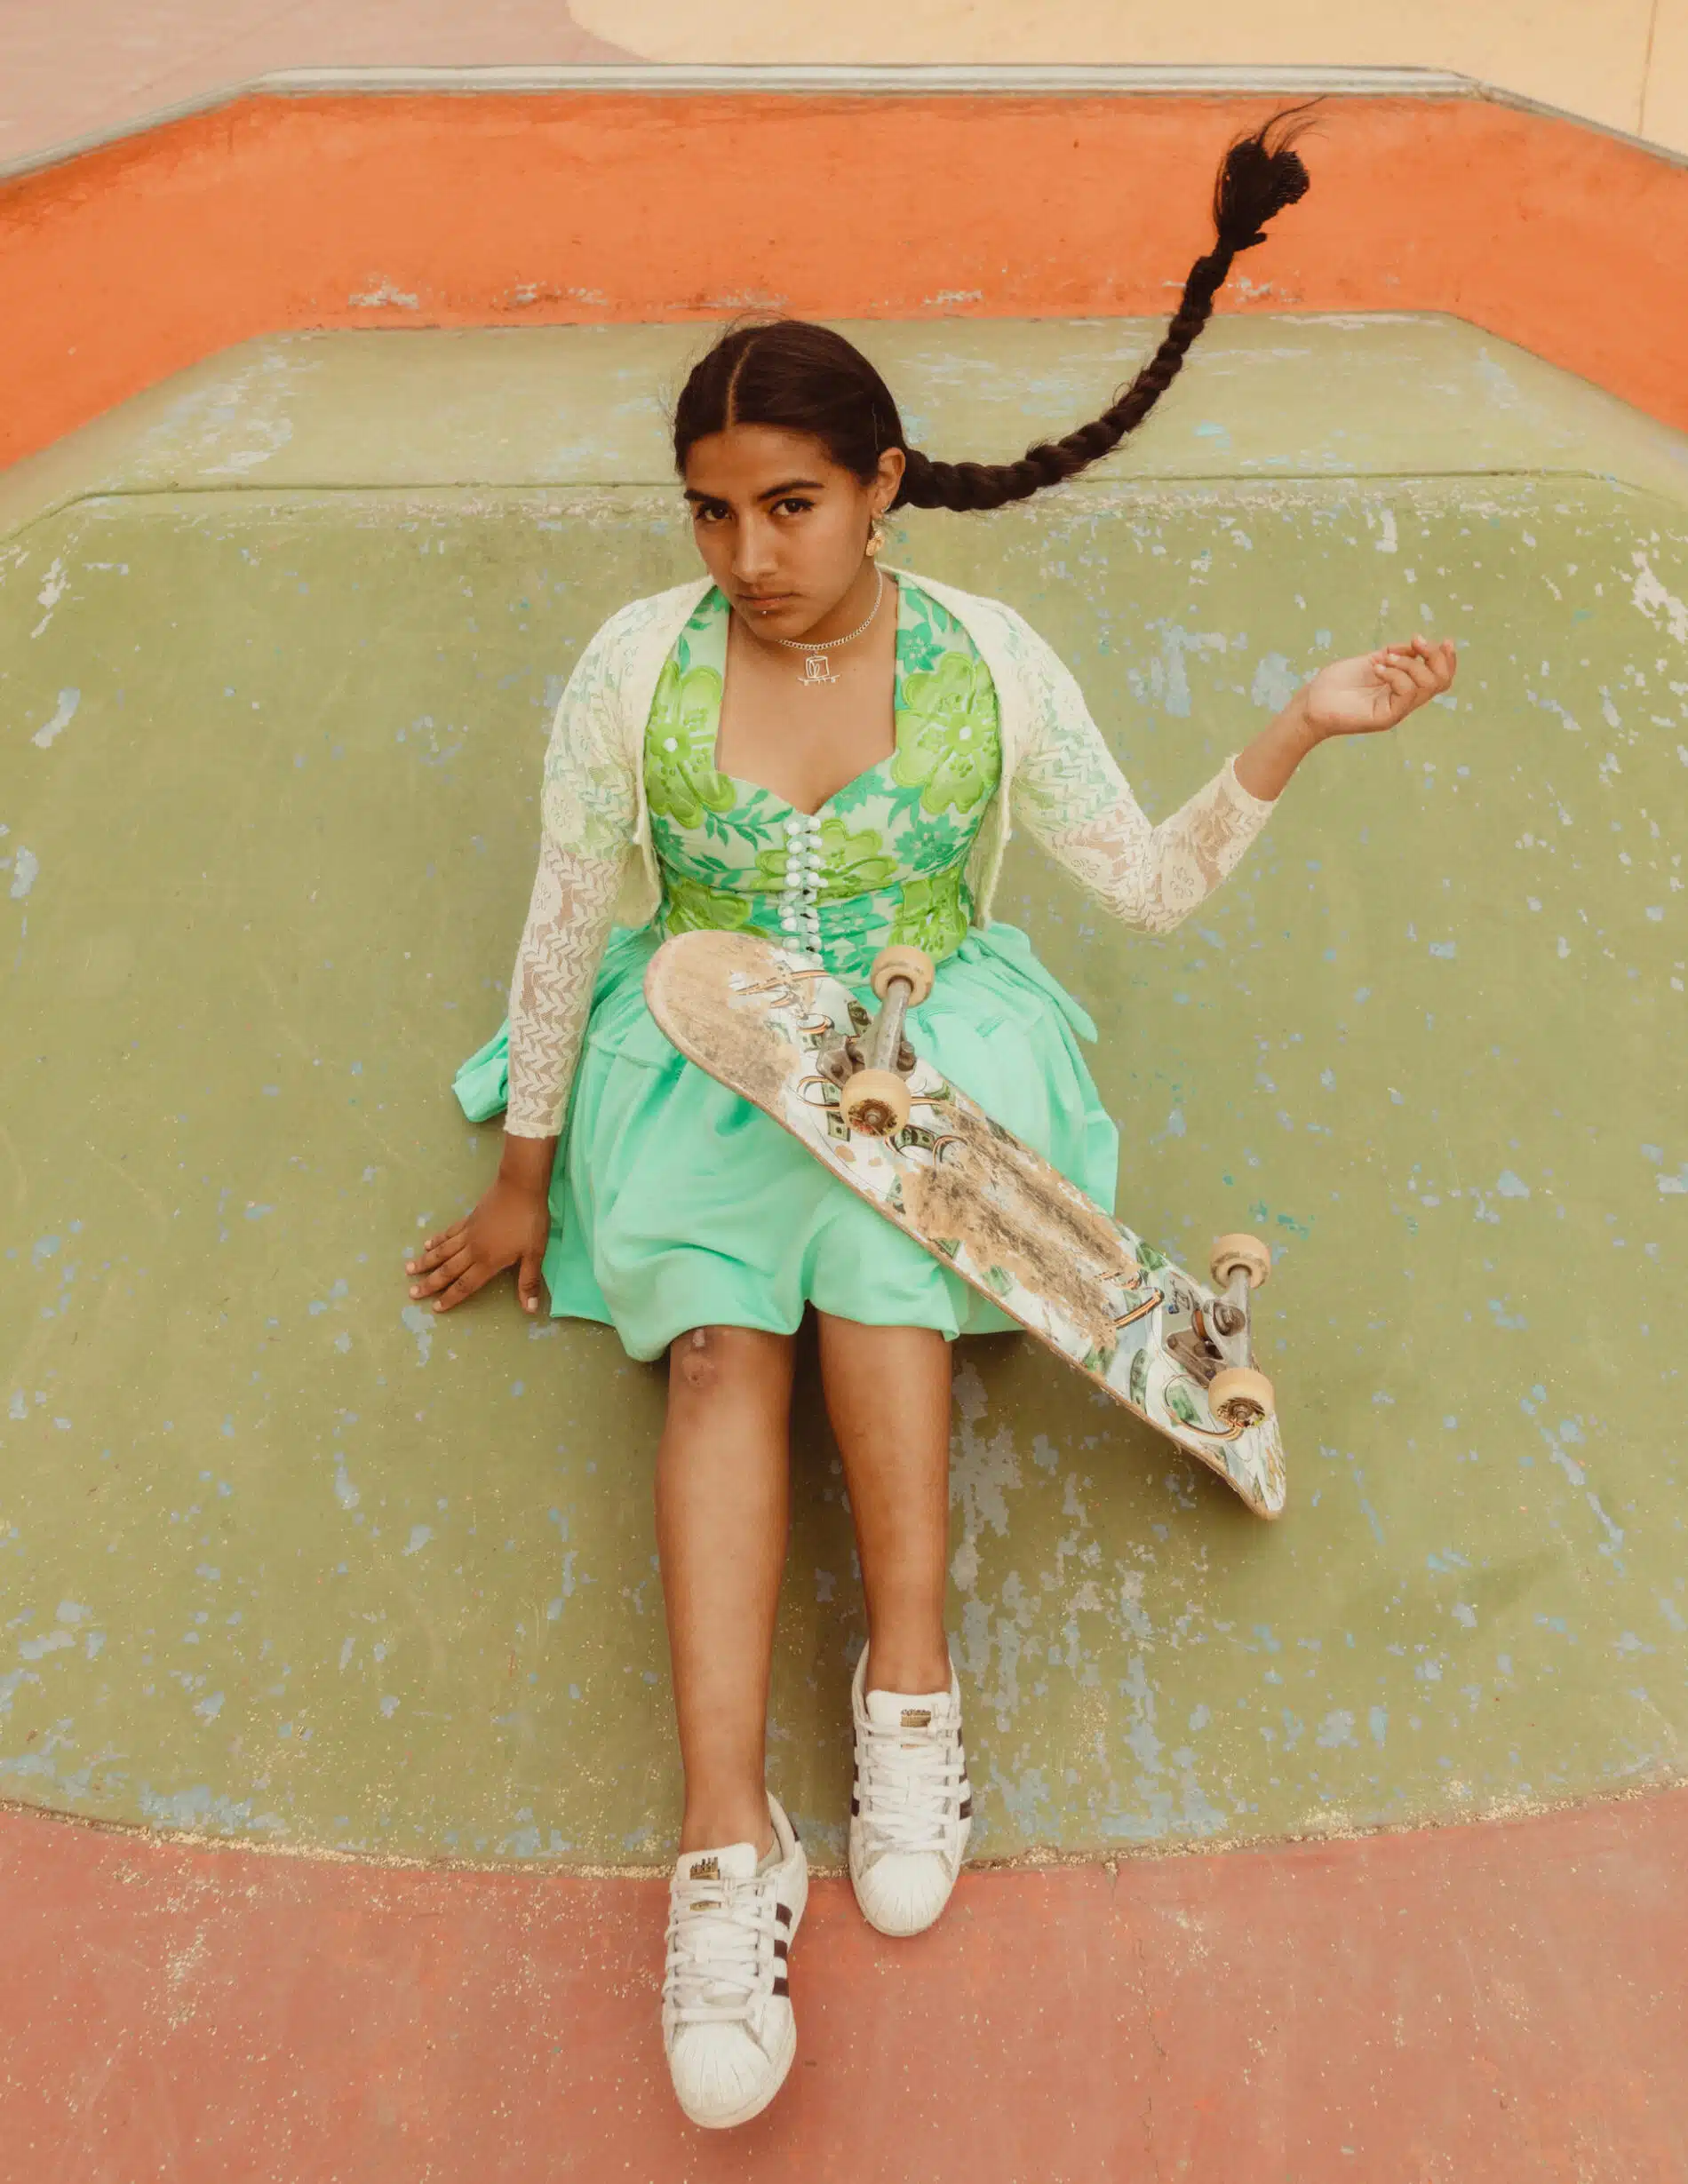 Celia D. Luna cholitas skater bolivia empoderada. jpg